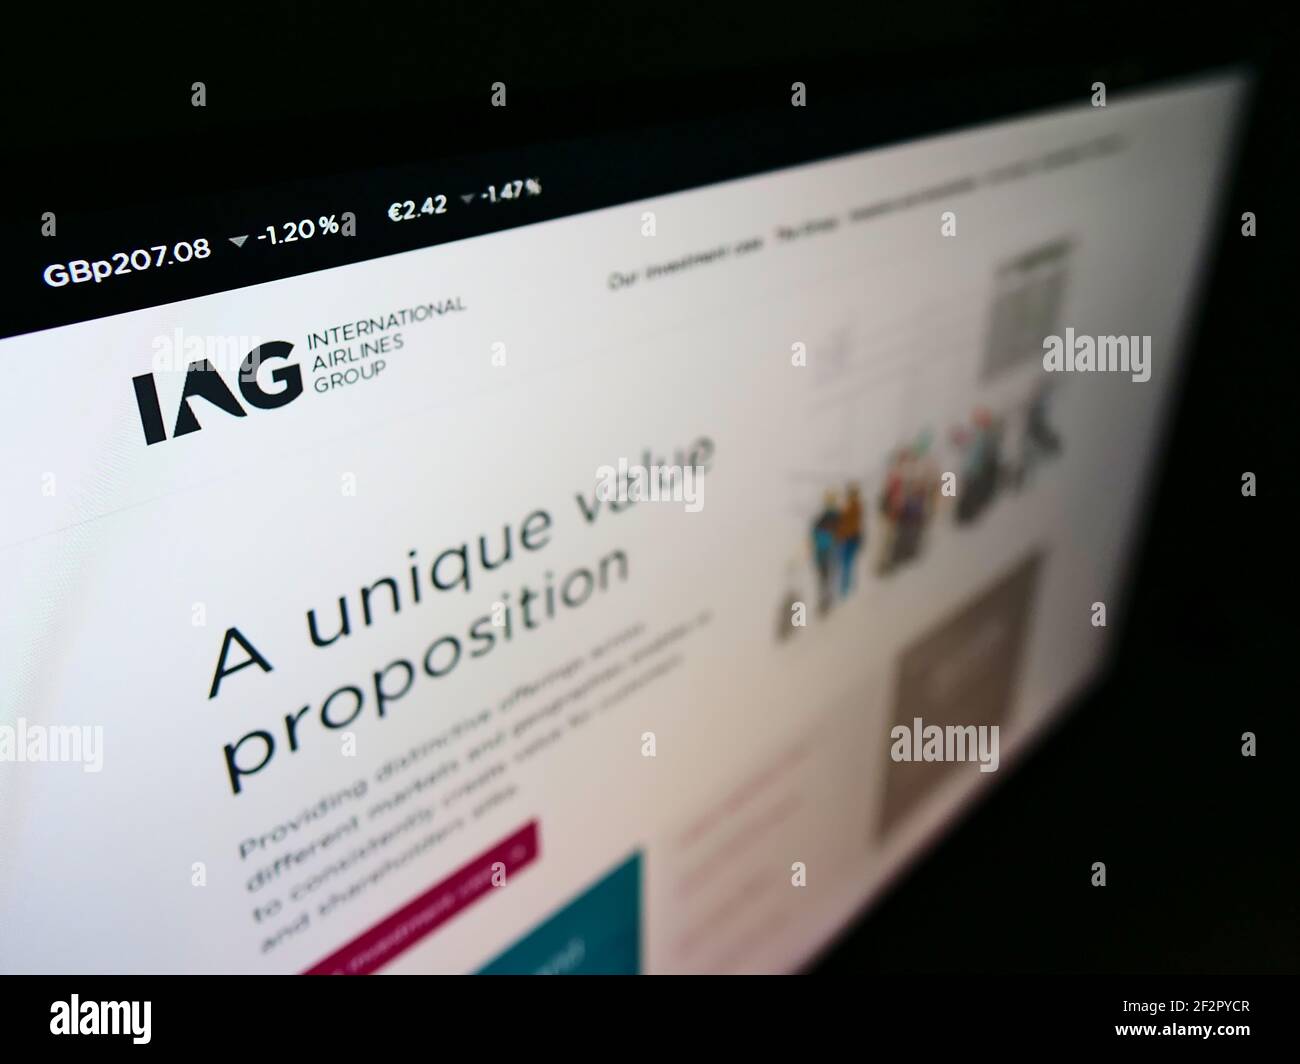 Visualizzazione ad alto angolo del sito Web aziendale con il logo della compagnia aerea International Airlines Group (IAG) sul monitor. Mettere a fuoco in alto a sinistra dello schermo. Foto Stock